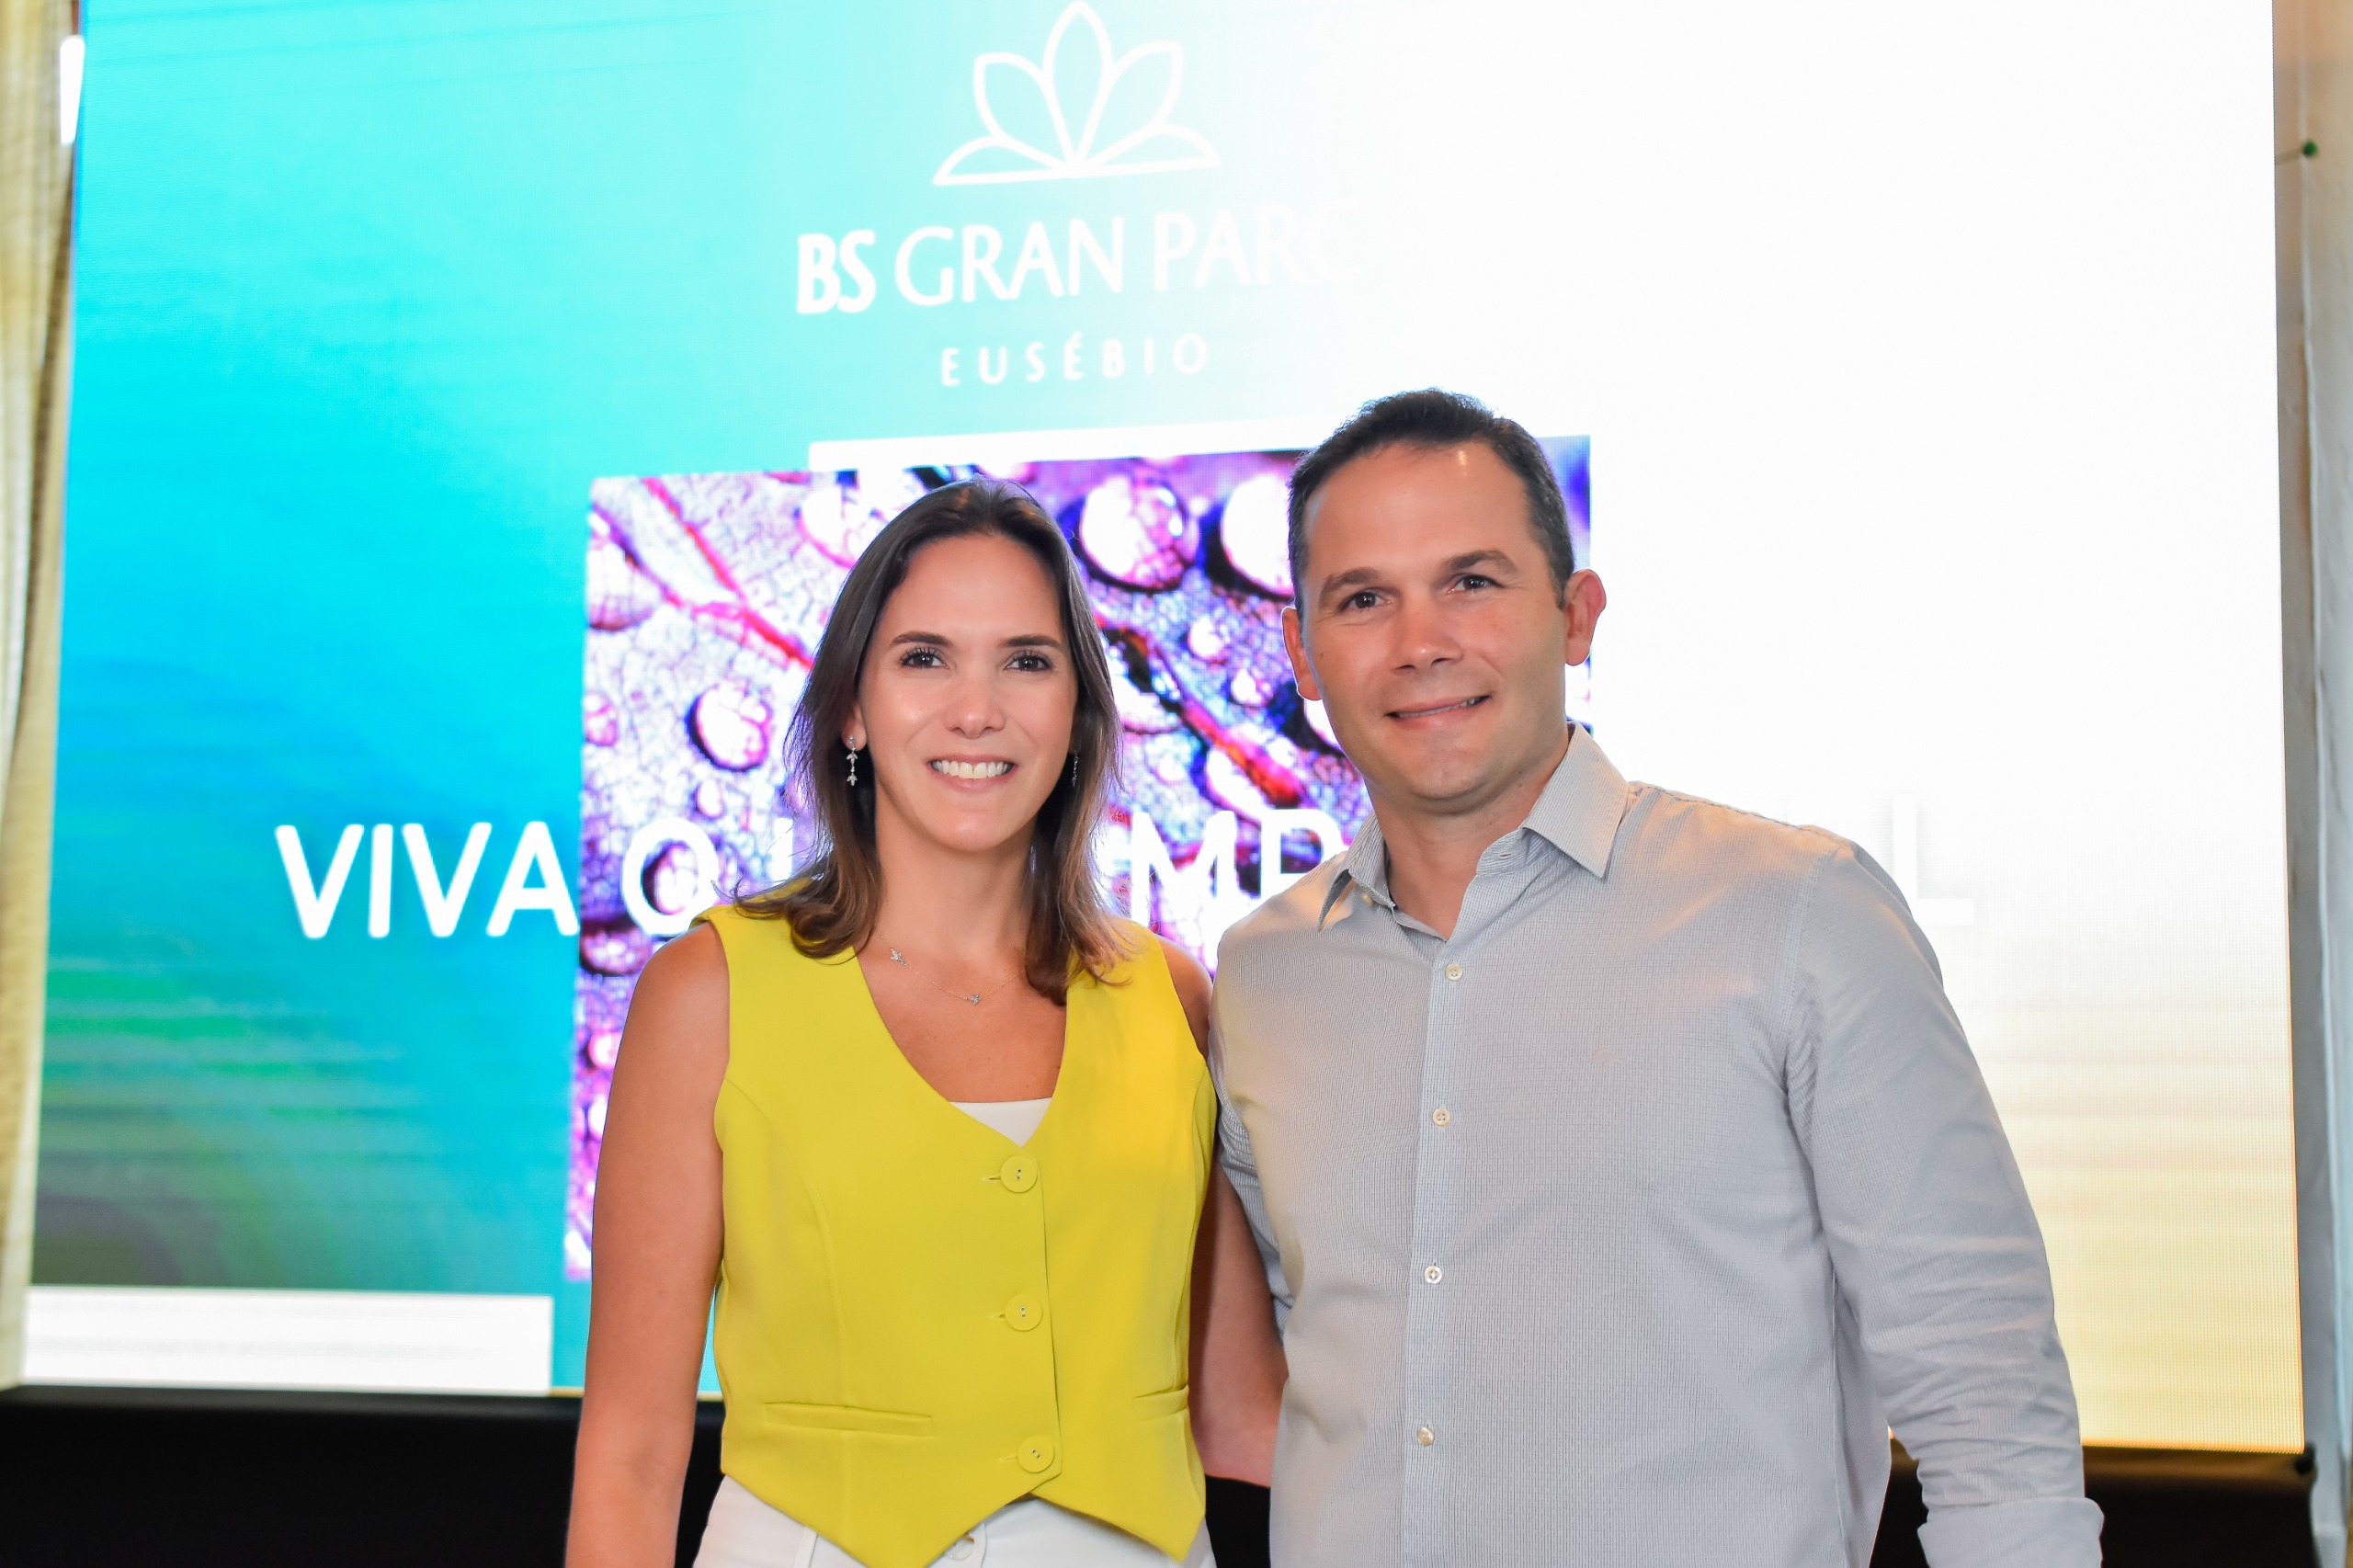 BSPar apresenta nova campanha do loteamento BS Gran Parc Eusébio